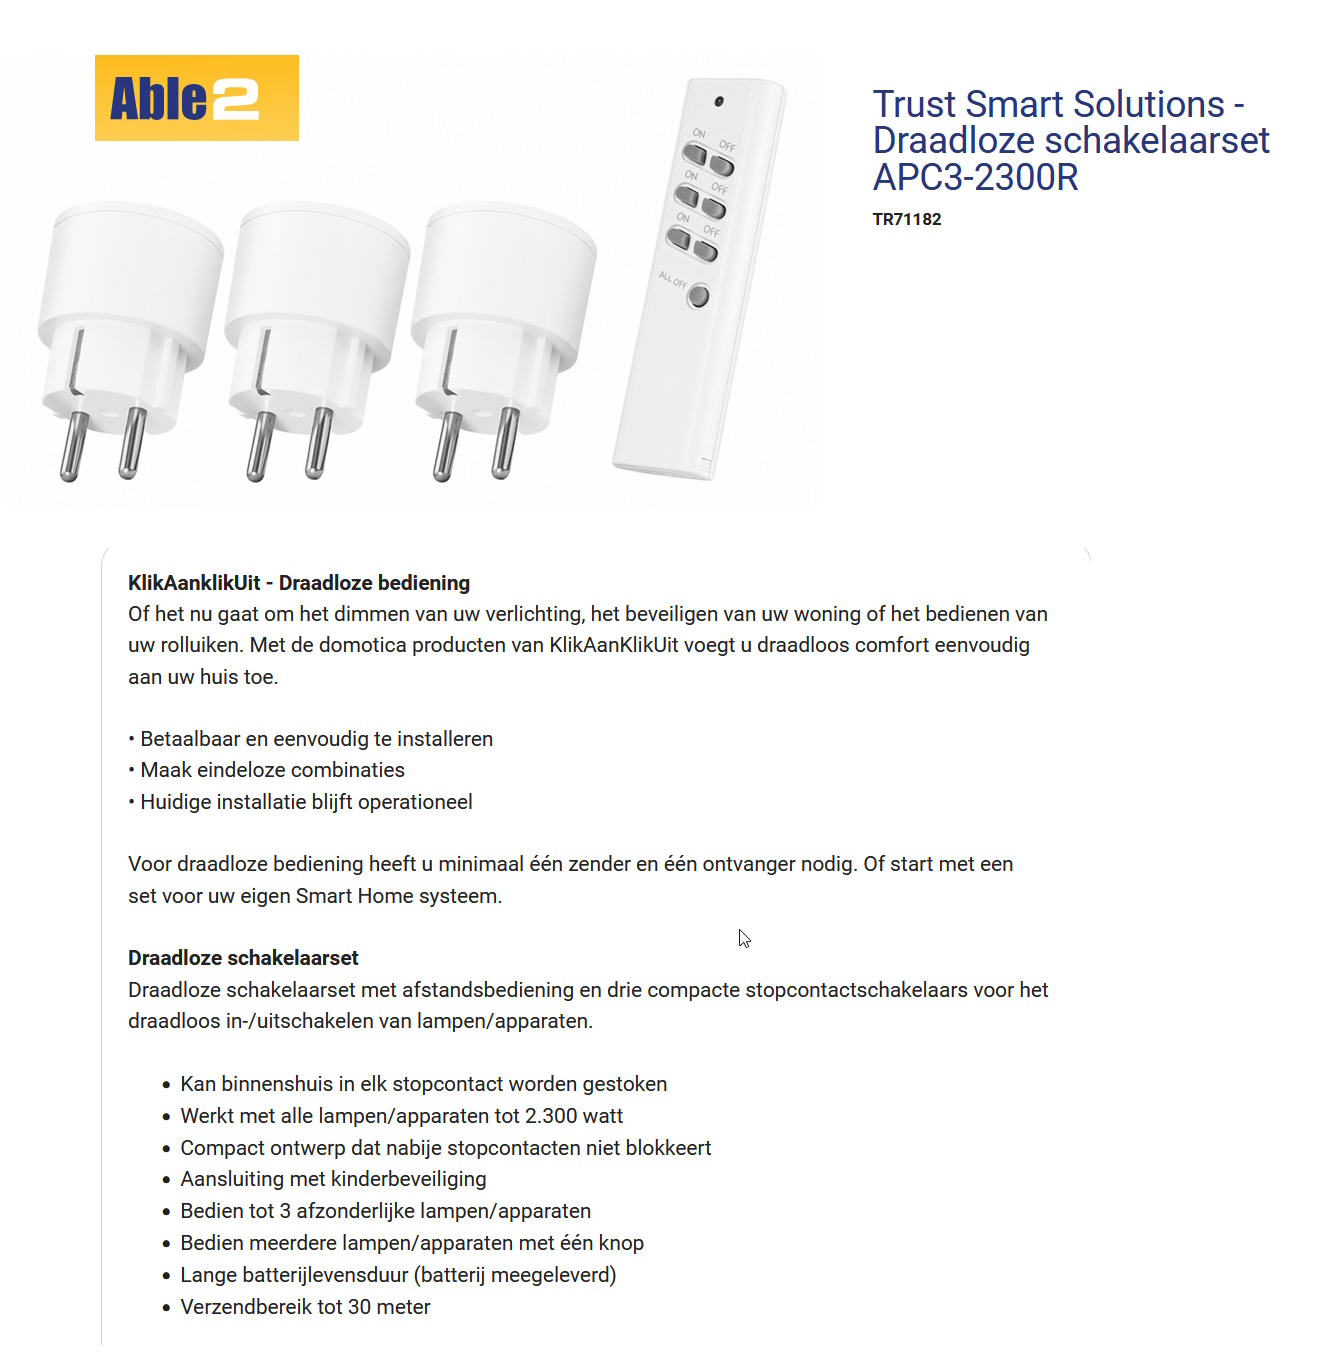 toegevoegd document 2 van Trust Smart Solutions aanpassingen stopcontact  